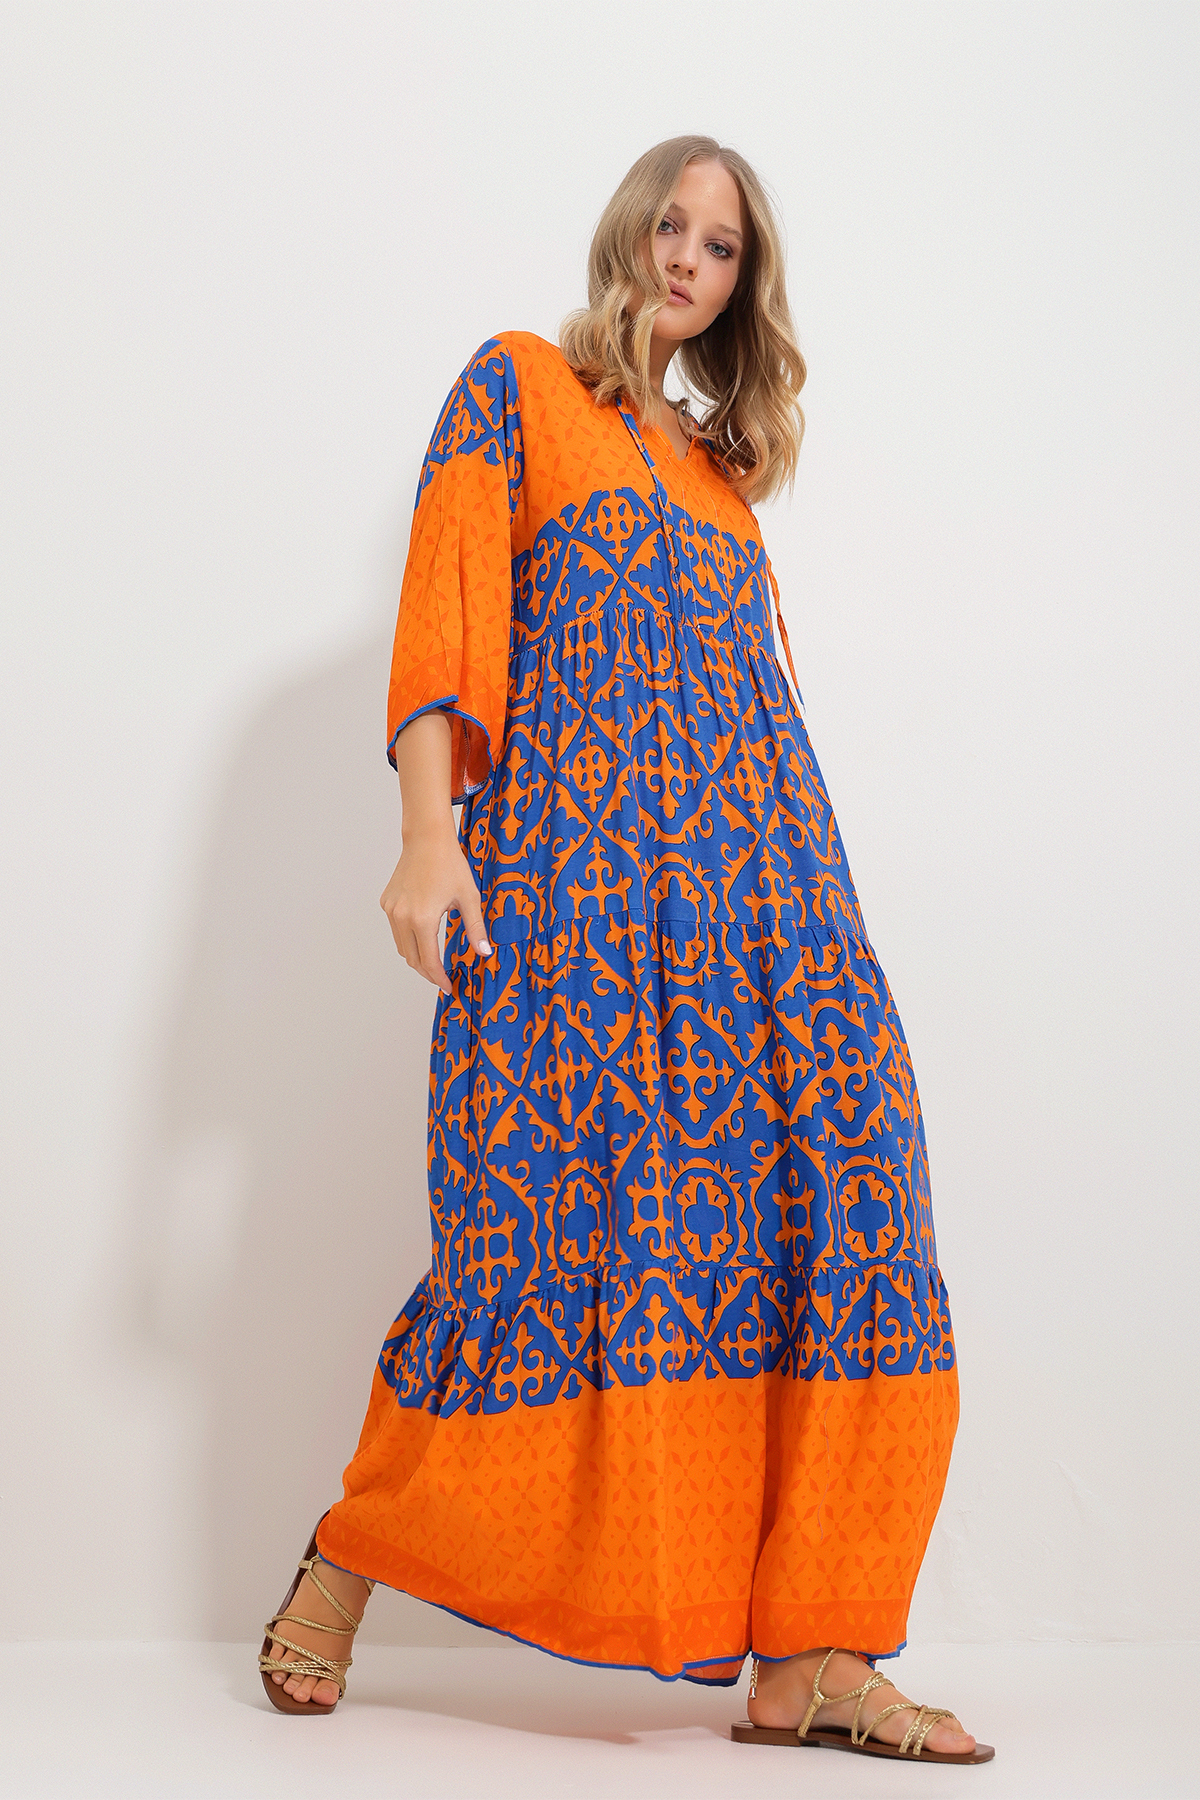 Levně Trend Alaçatı Stili Women's Orange Front Laced Patterned Woven Viscose Dress